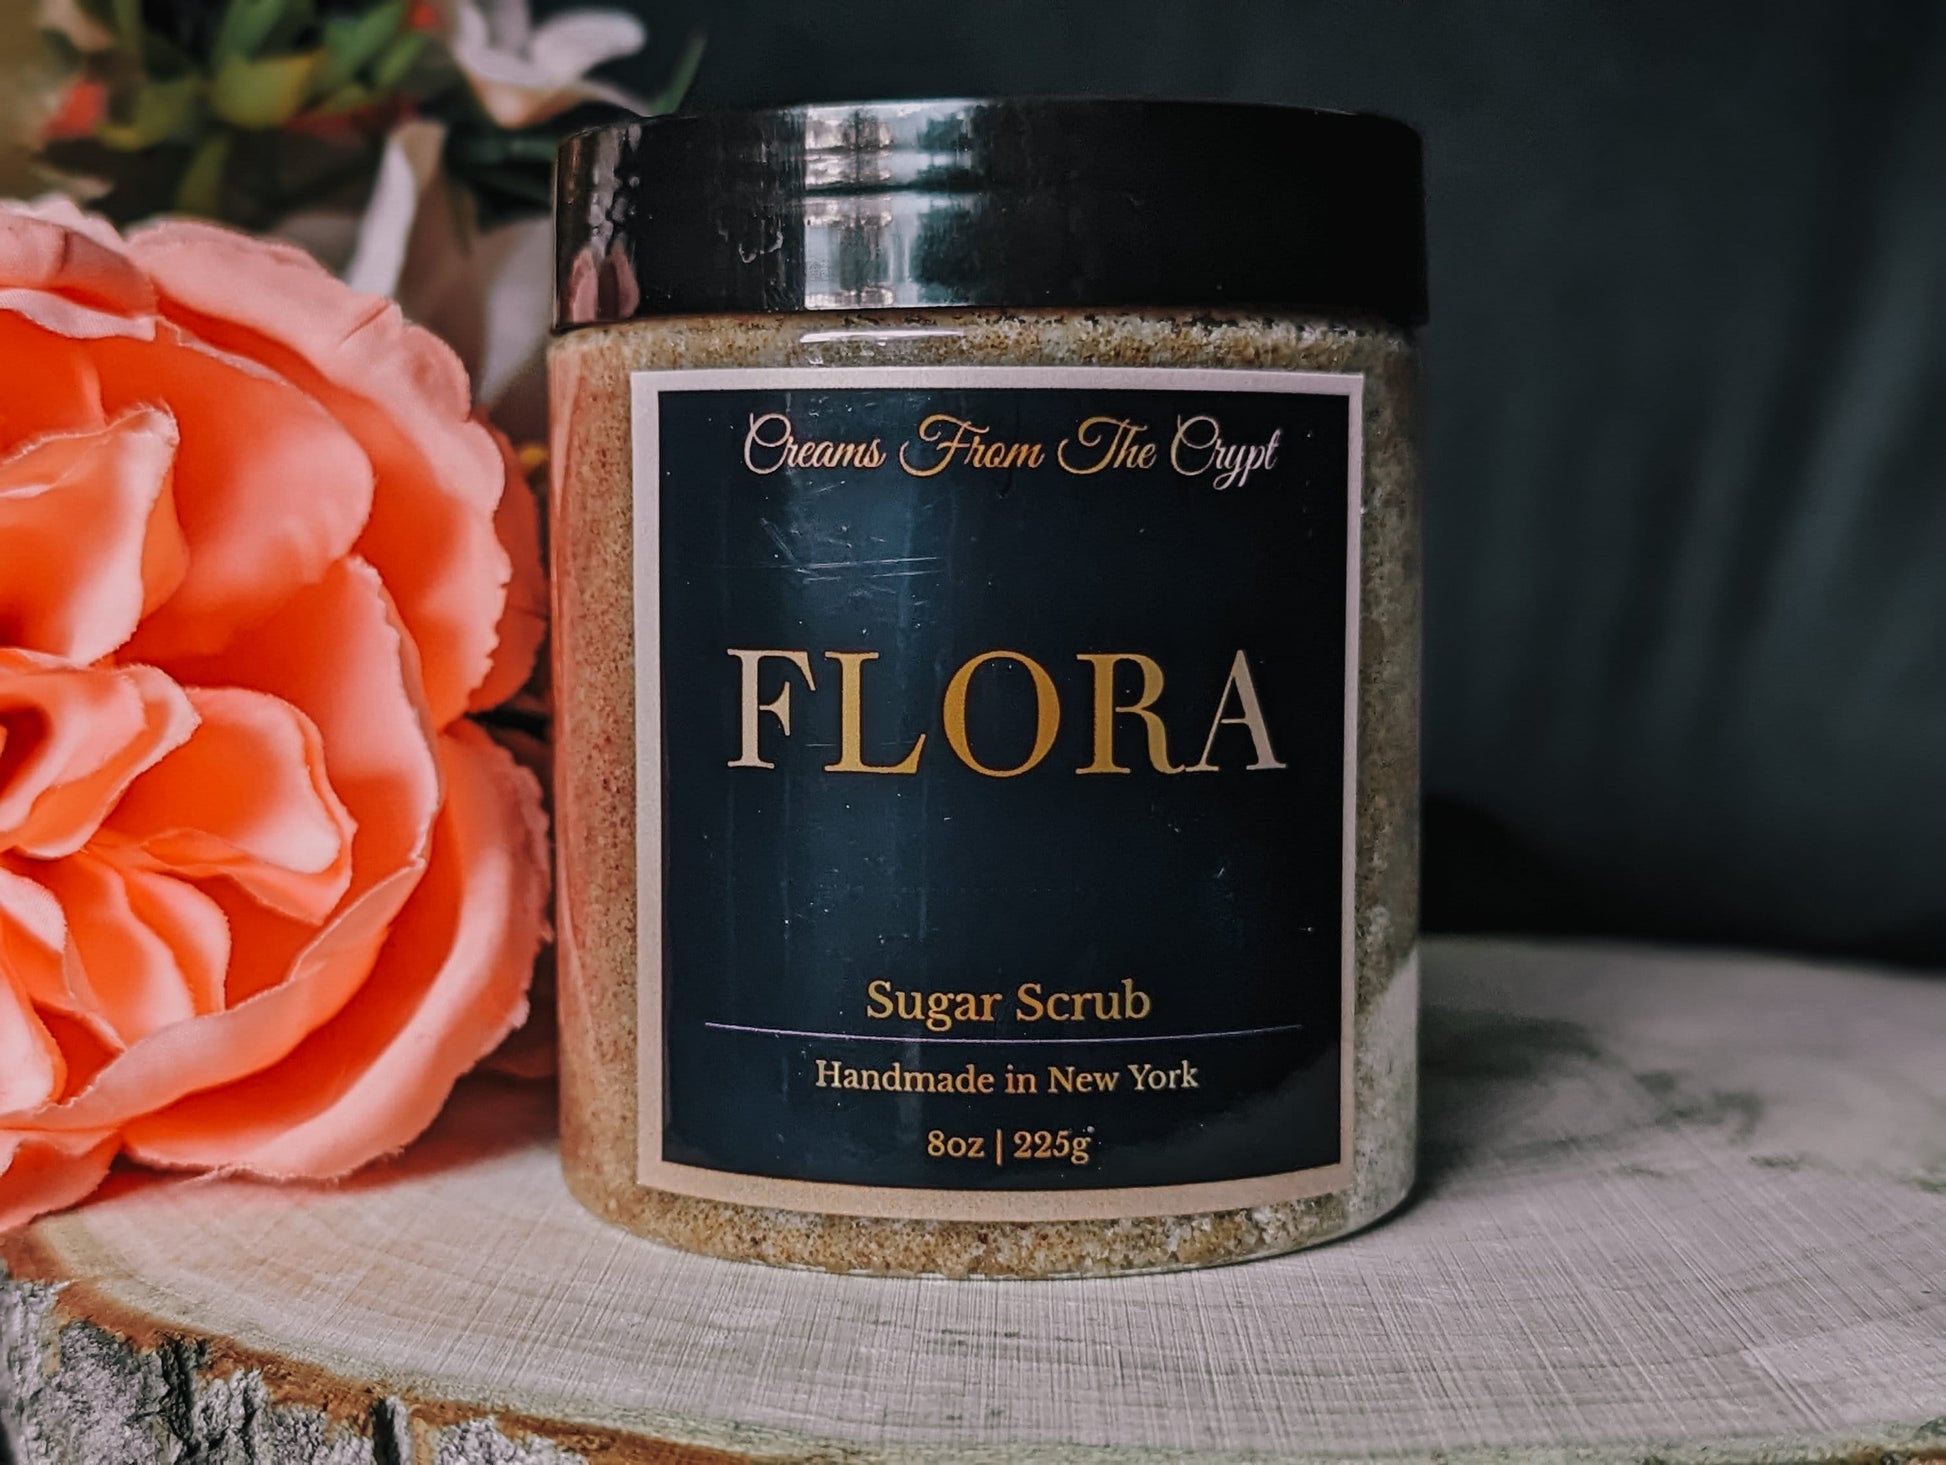 FLORA - Rose and Violet Scented Sugar Scrub, Vegan skincare, Exfoliate, Shea, Mango Butter, Body Scrub, Floral Fragrance, Self Care, Gift